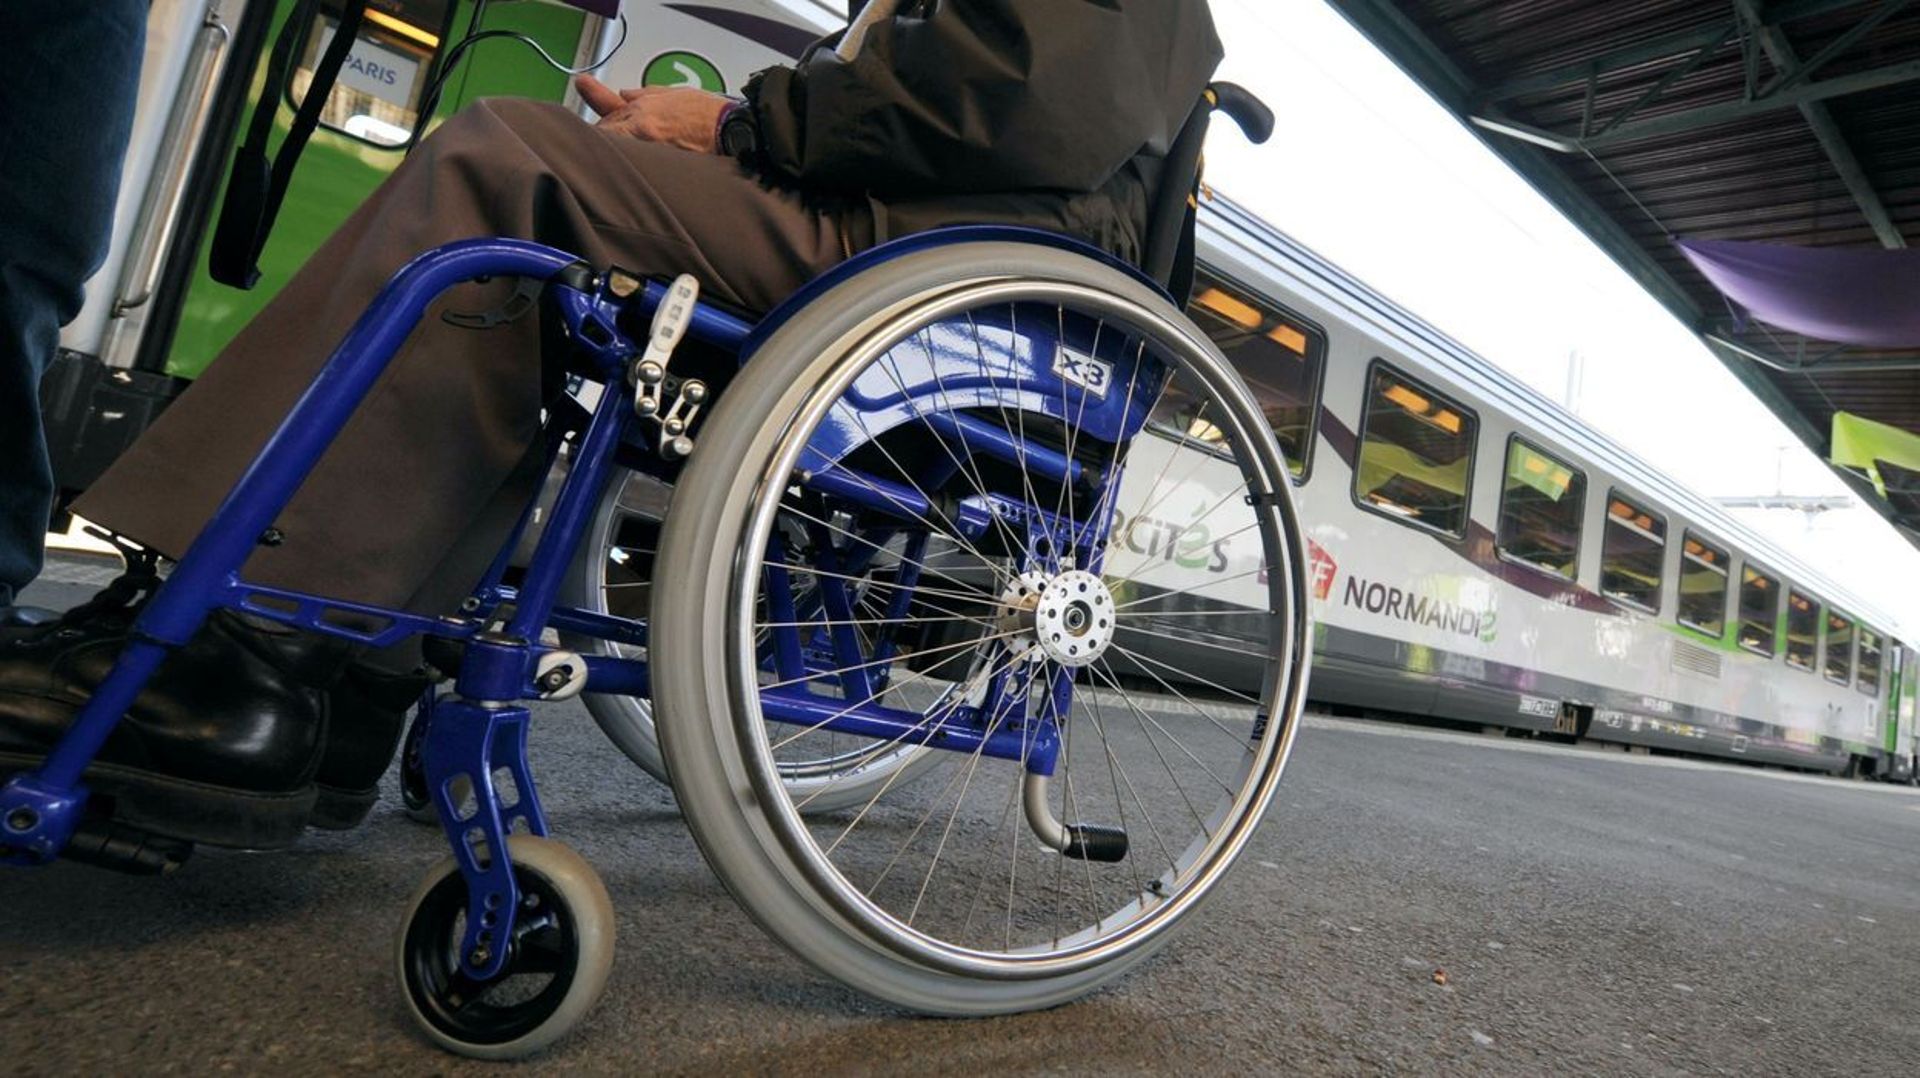 Les nouveaux wagons de la SNCB inadaptés aux personnes à mobilité réduite